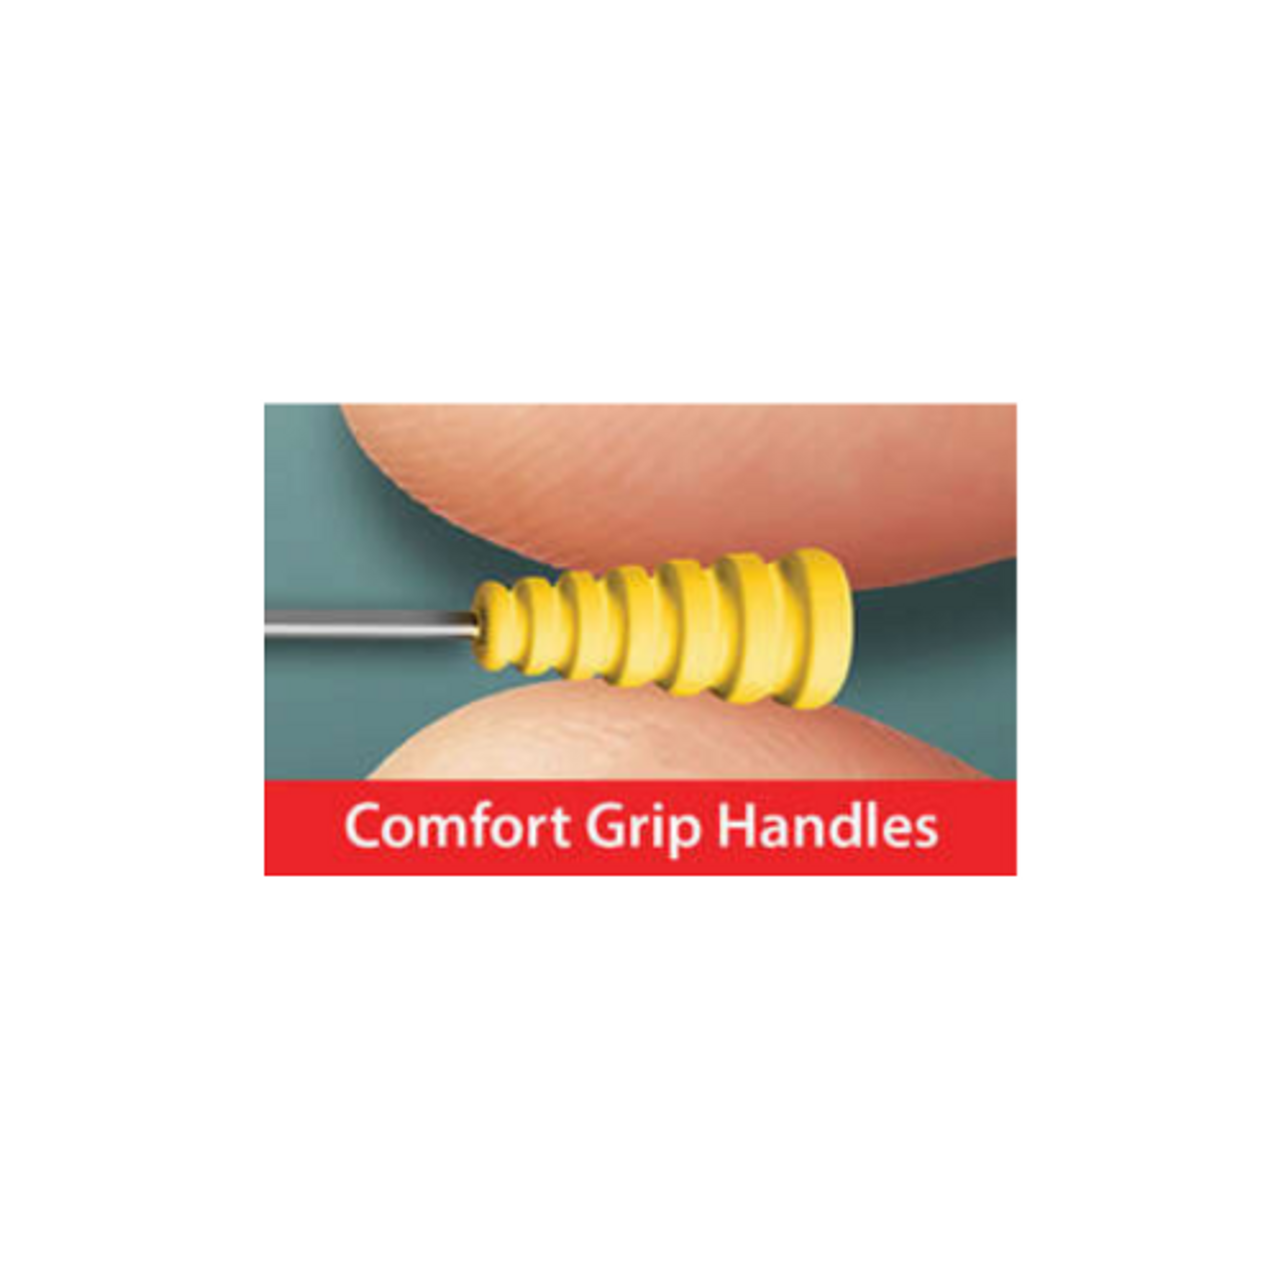 Taylor Seville Fine Applique Magic Pins comfort grip handle